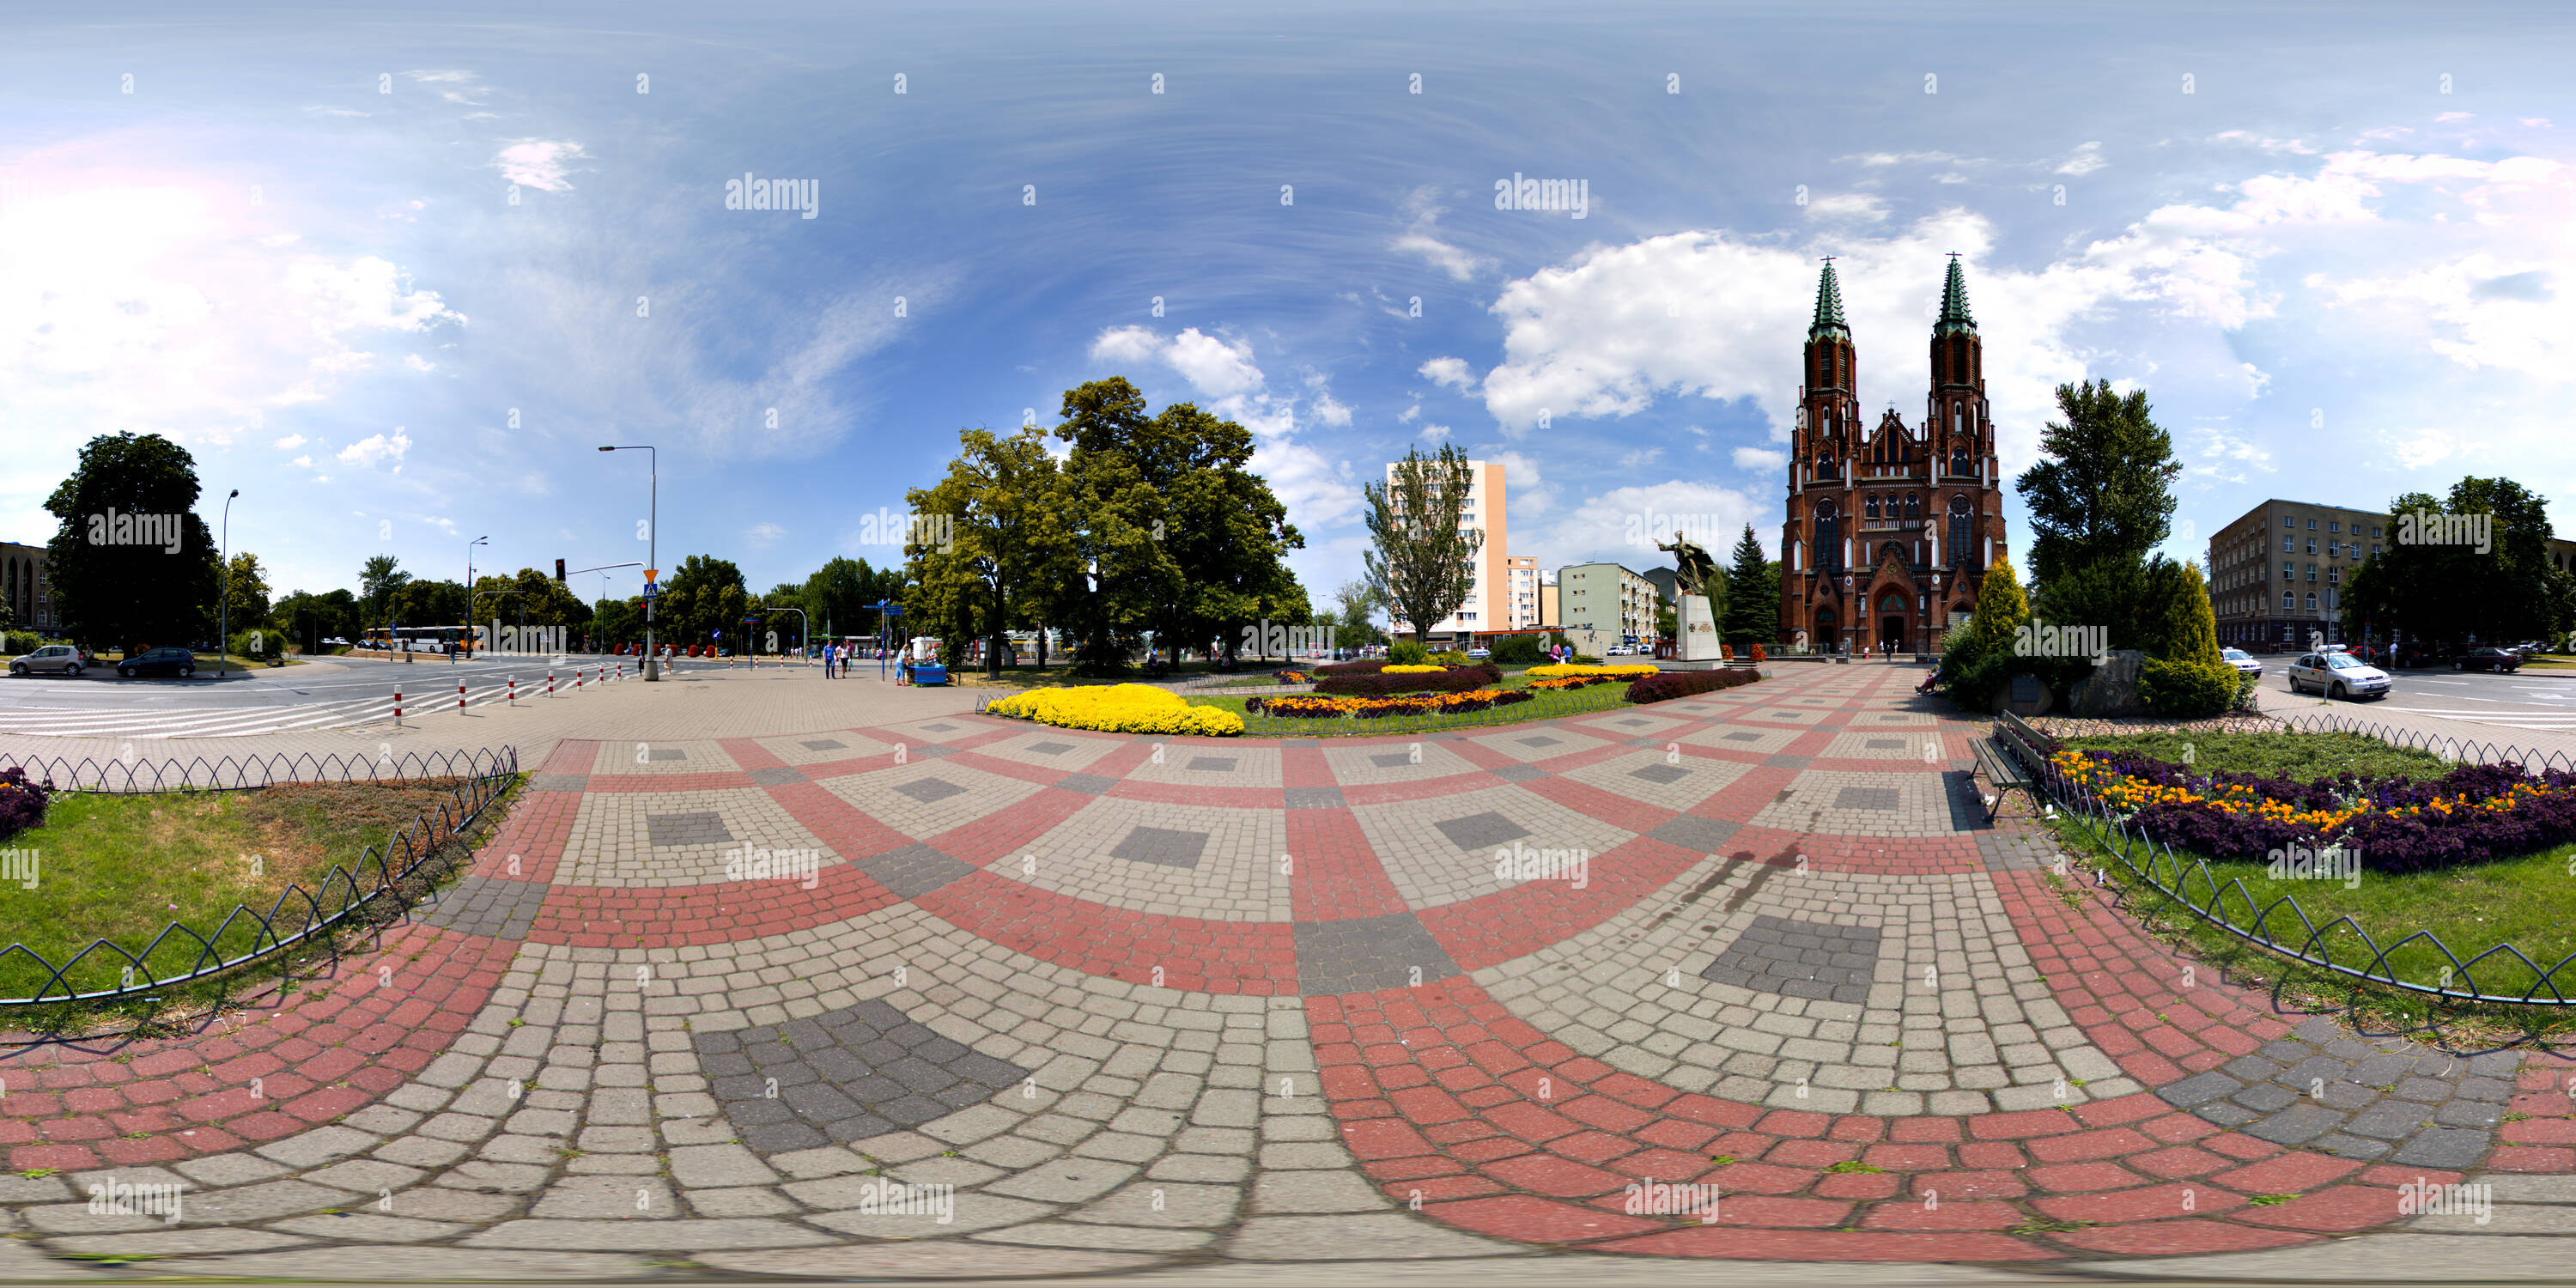 Vue panoramique à 360° de Pologne, Varsovie, Cathédrale Saint-florian